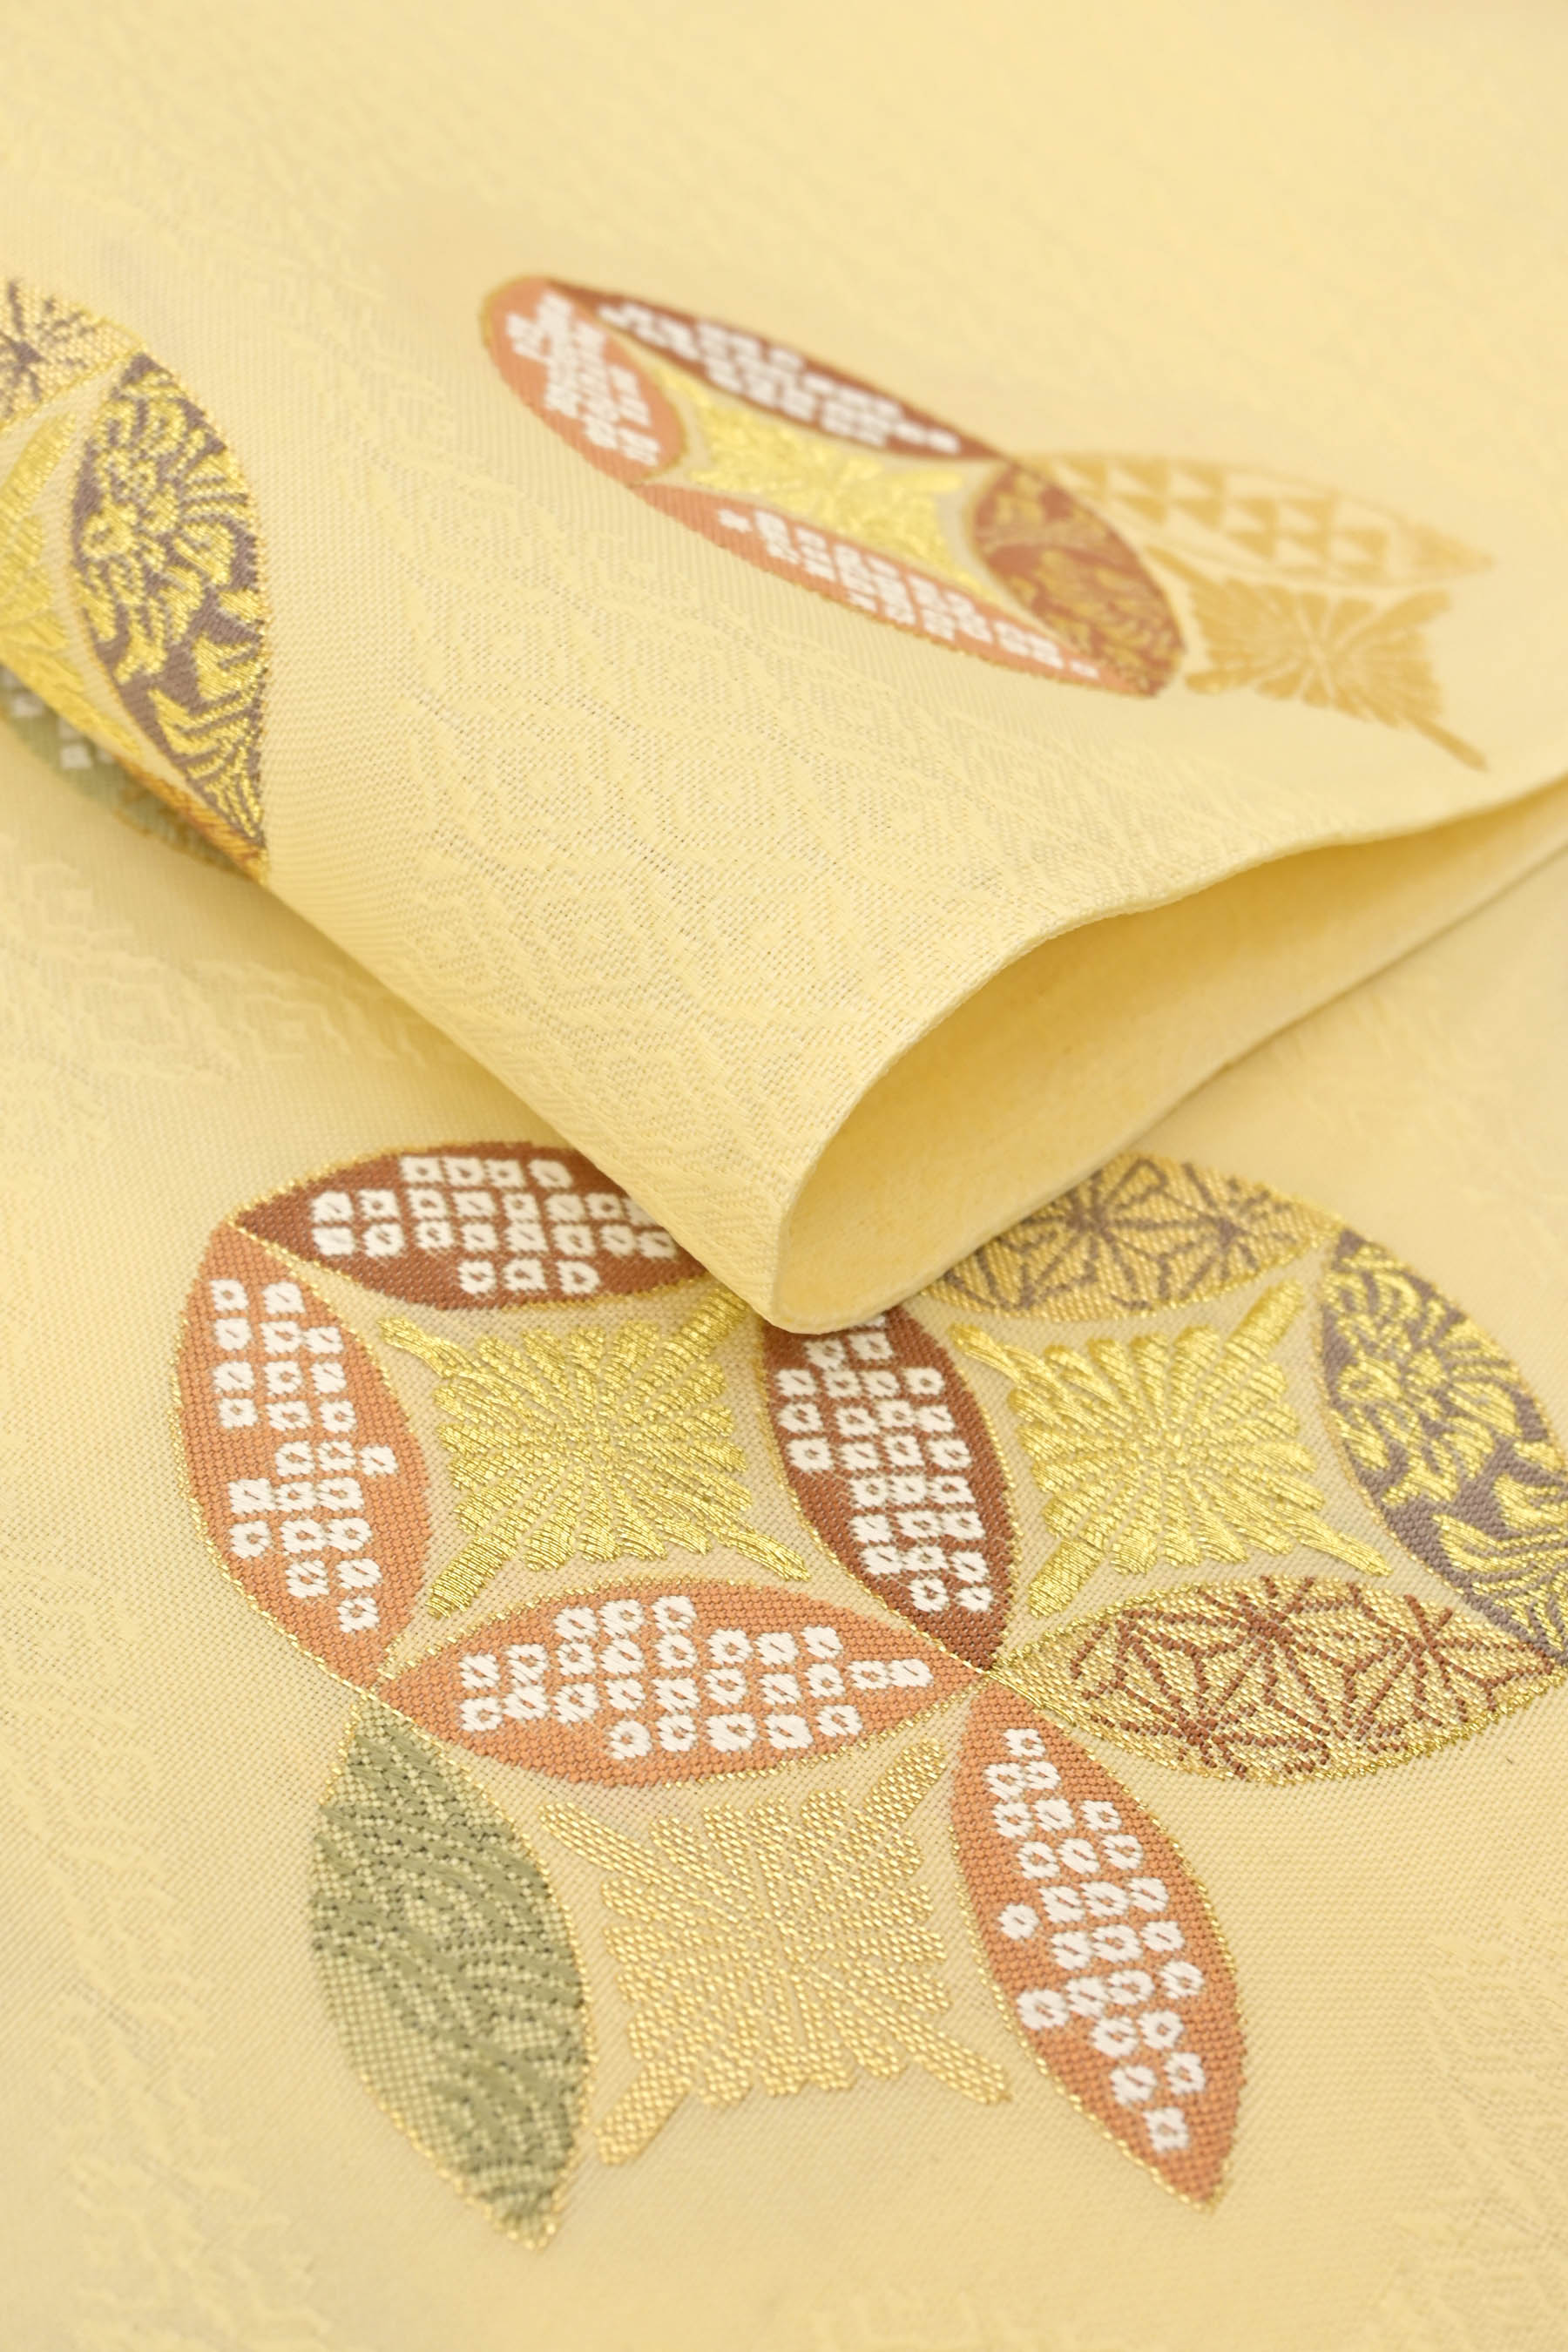 【ふくい】 特選西陣織袋帯 「七宝花菱文」 気品の溢れる…古典意匠。 お値段以上の良質フォーマル帯！